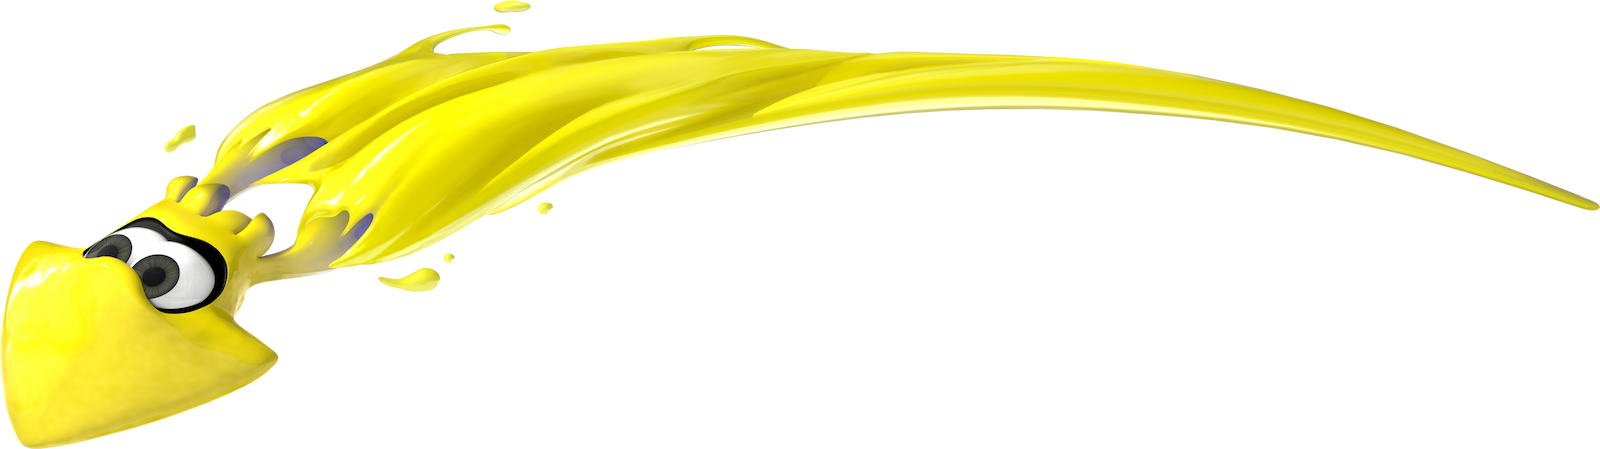 Un inkling amarillo se lanza a gran distancia mientras nada.